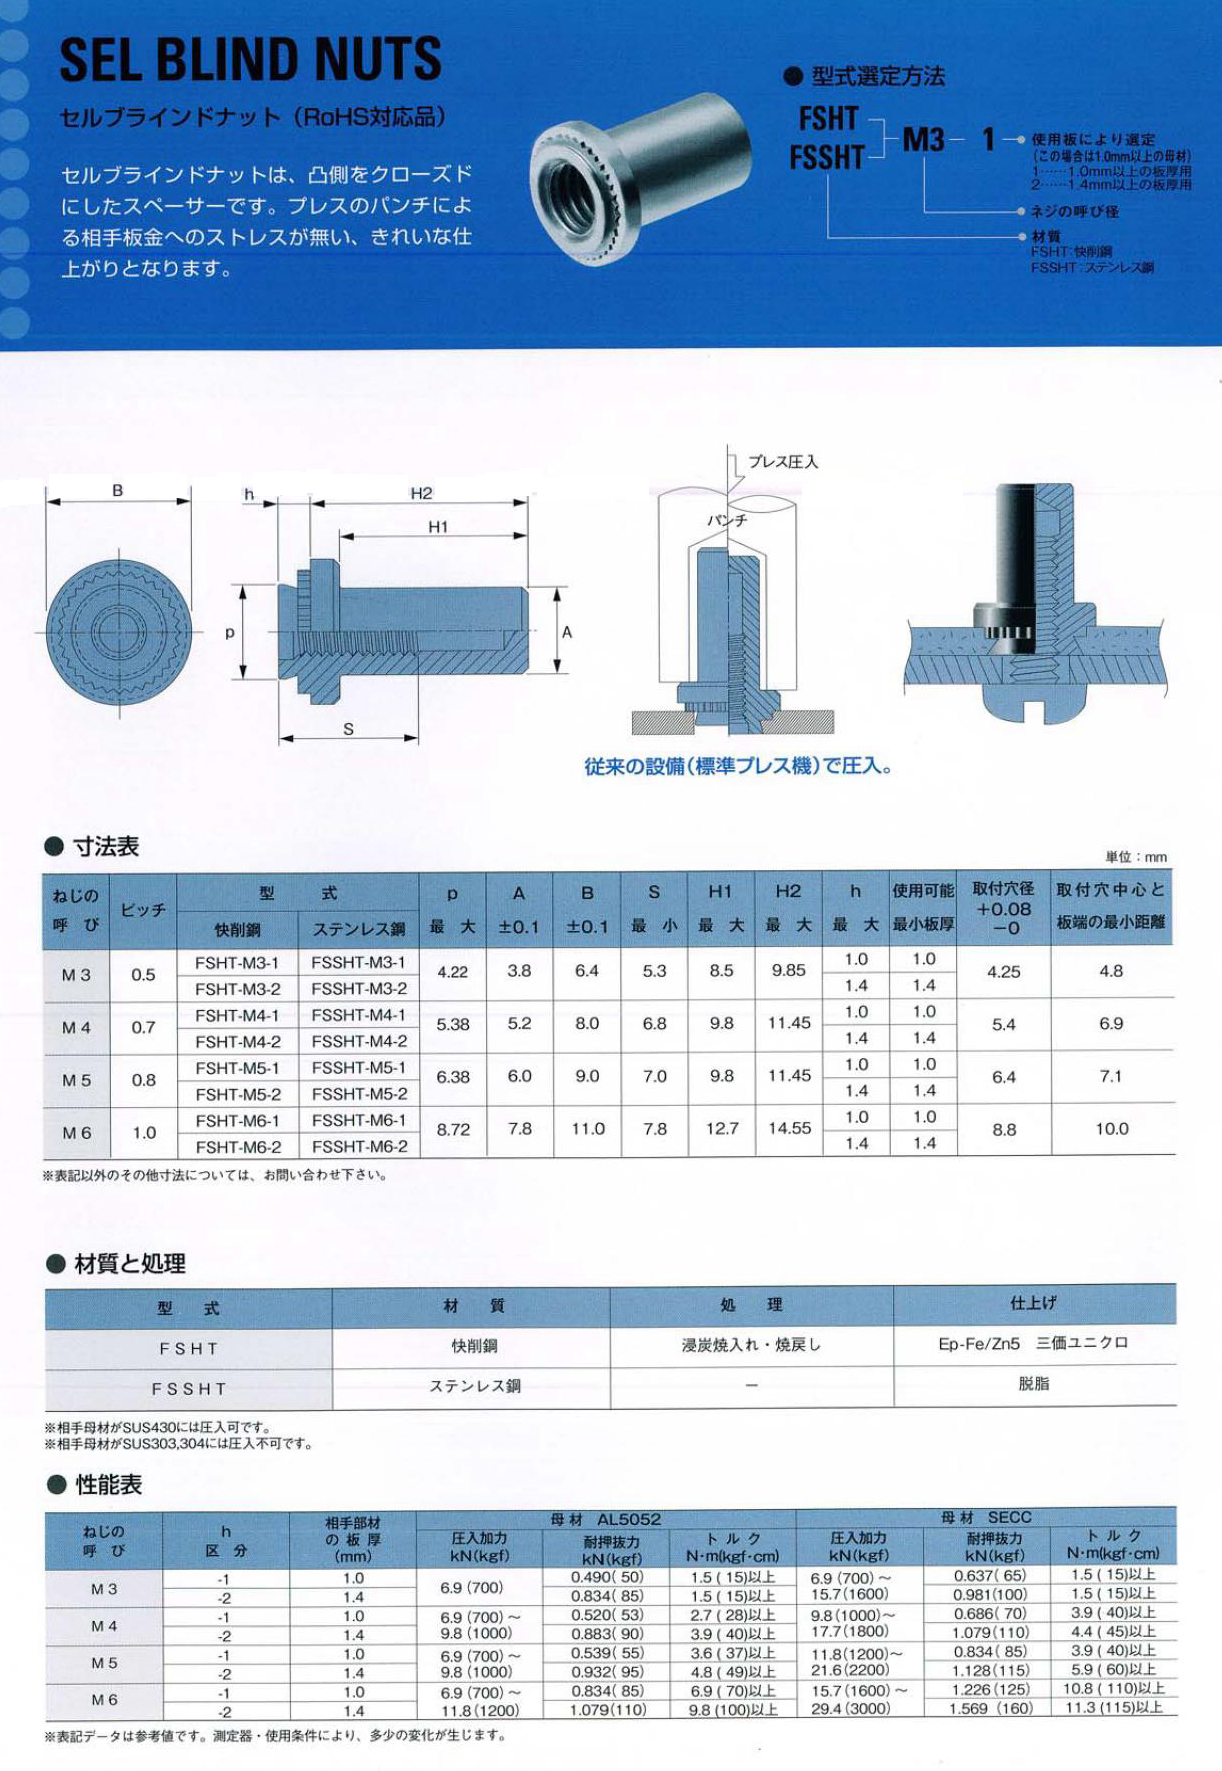 セルブラインドナット 表面処理(三価ホワイト（白）) 規格(FSHT-M6-2) 入数(500)  - 4